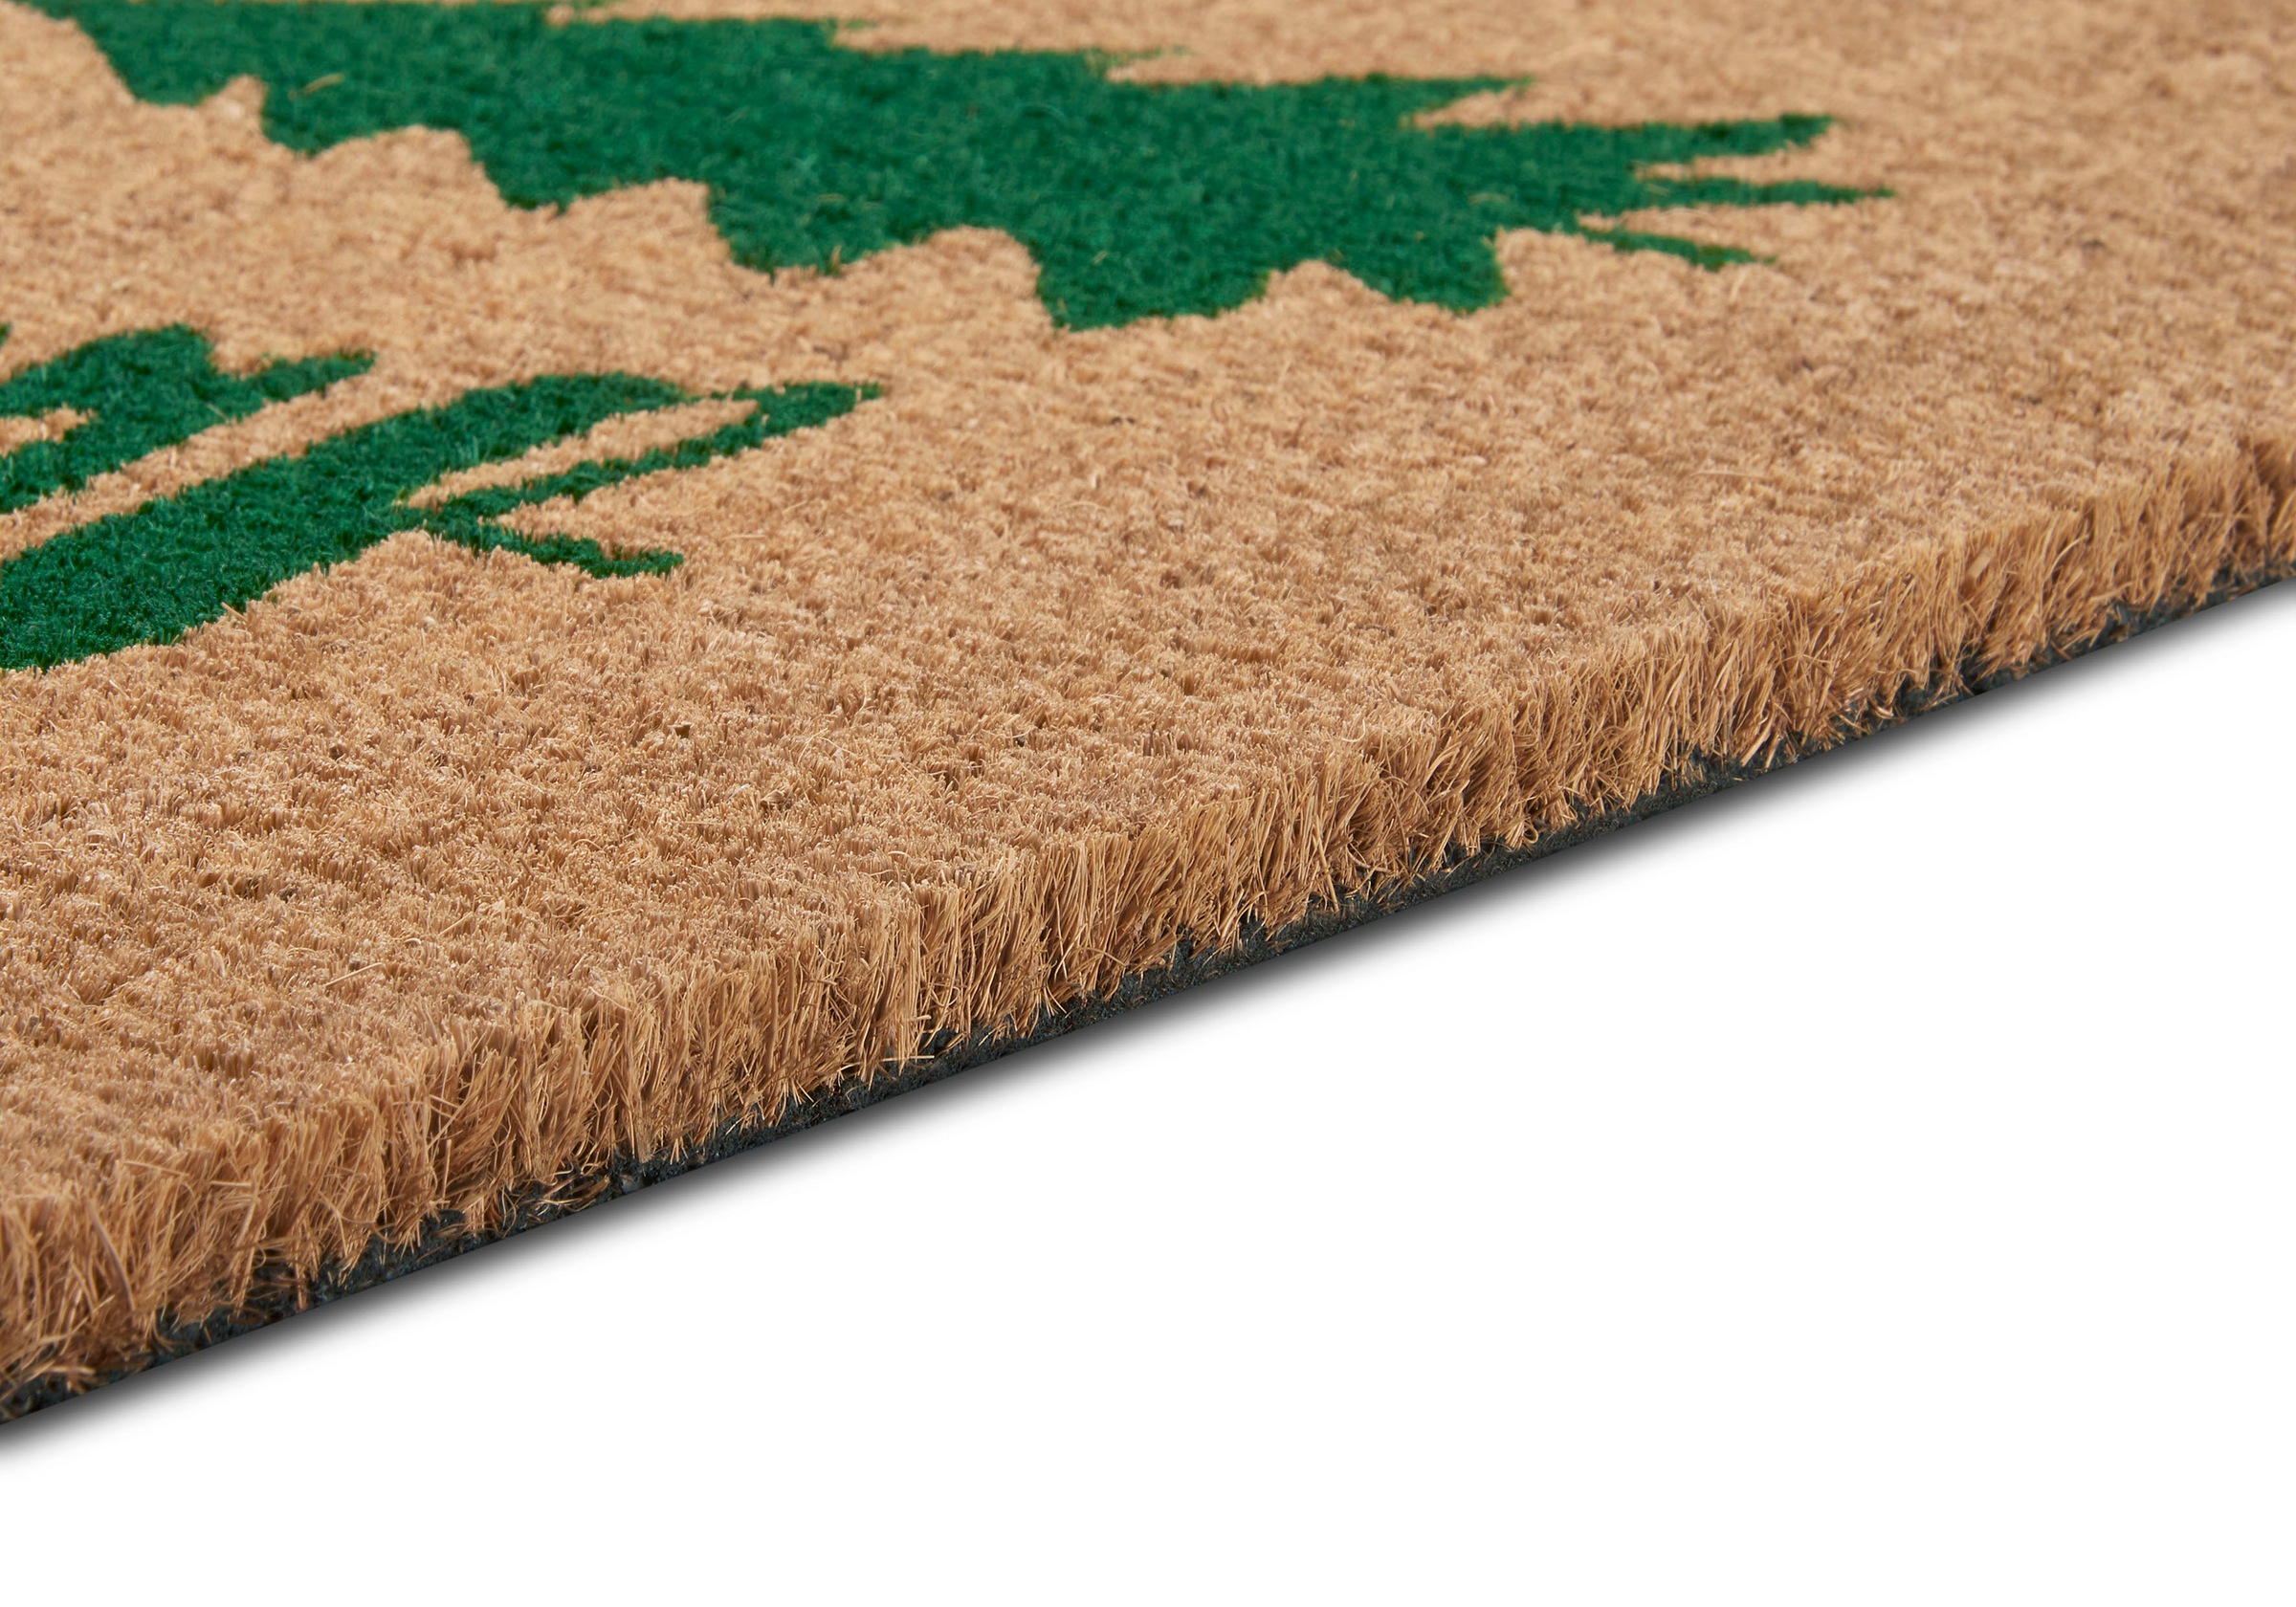 HANSE Home Fußmatte »Mix Mats Kokos Decorated Pine Trees«, rechteckig, Weihnachten, Schmutzfangmatte, Outdoor, Rutschfest, Innen, Kokosmatte